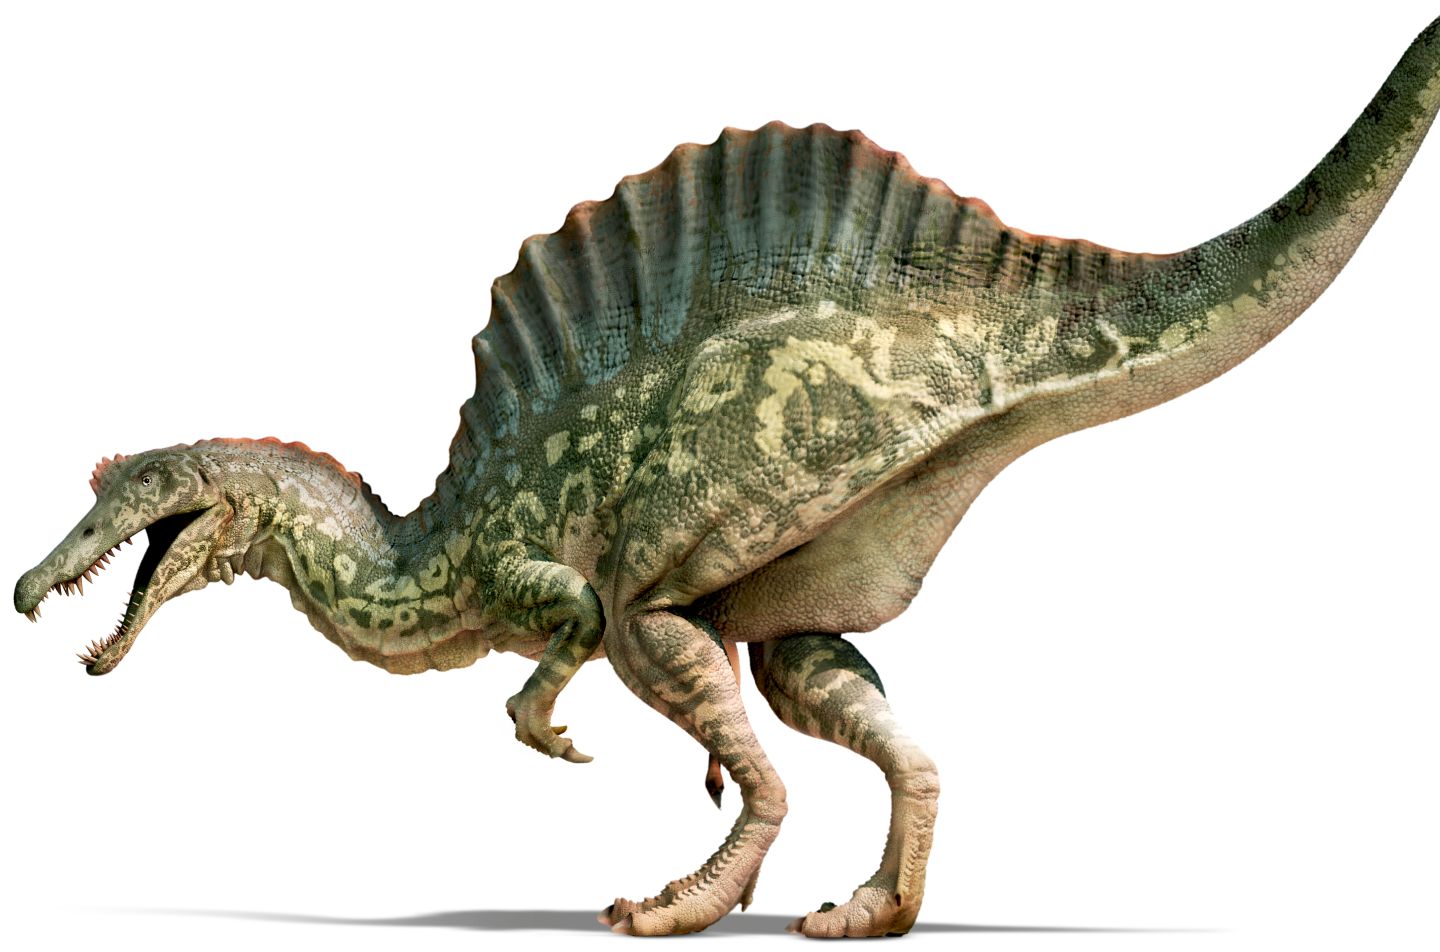 高型棘龙复原说明一下,棘龙b曾经认为是棘龙类的其他物种而非埃及棘龙